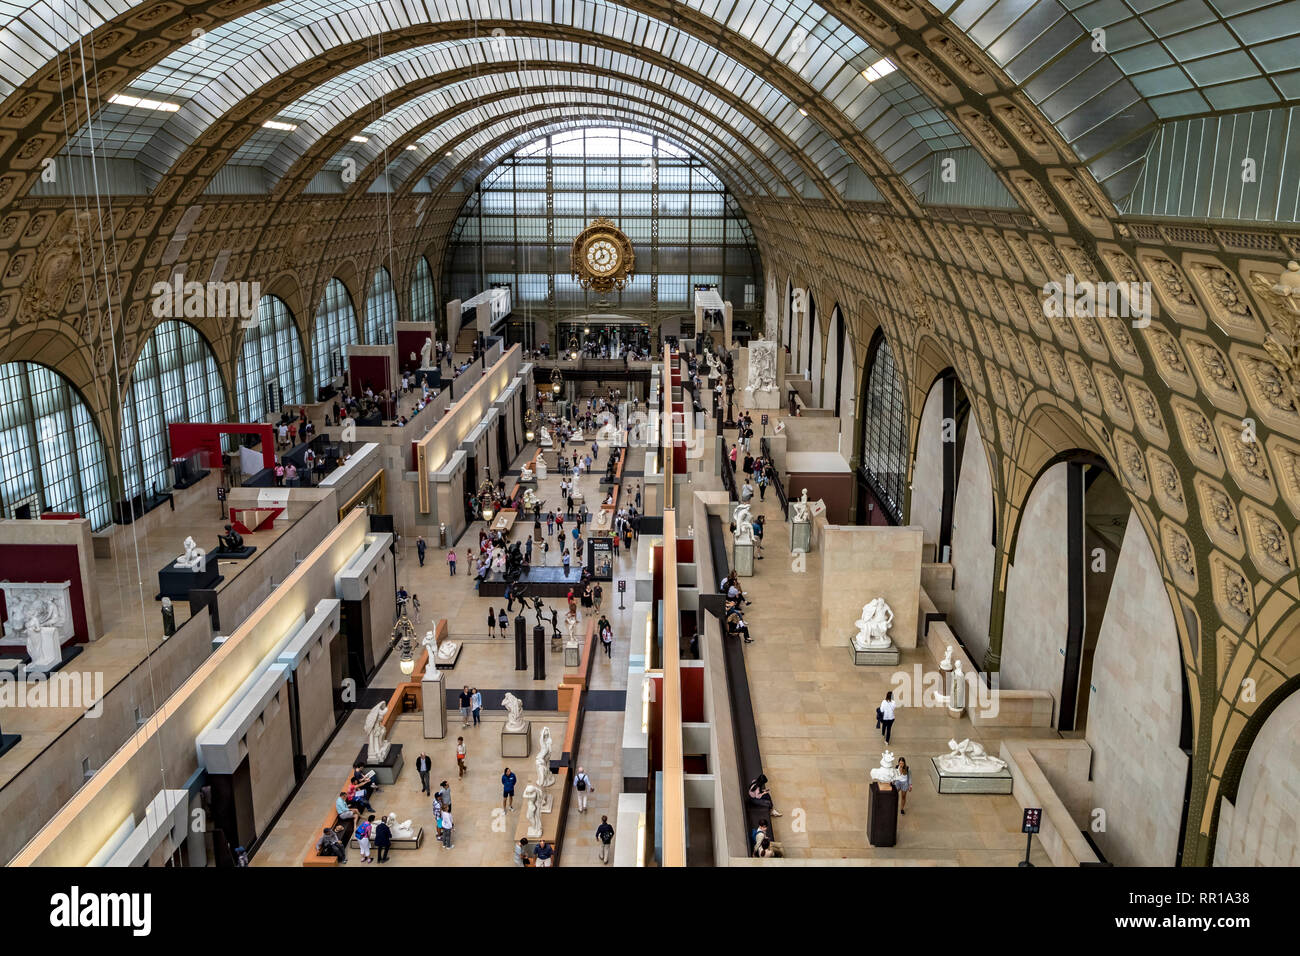 Innenraum des Musée d'Orsay, das Museumsgebäude war ursprünglich ein Bahnhof, Gare d'Orsay, und beherbergt heute eine Sammlung von Kunst, Paris Stockfoto